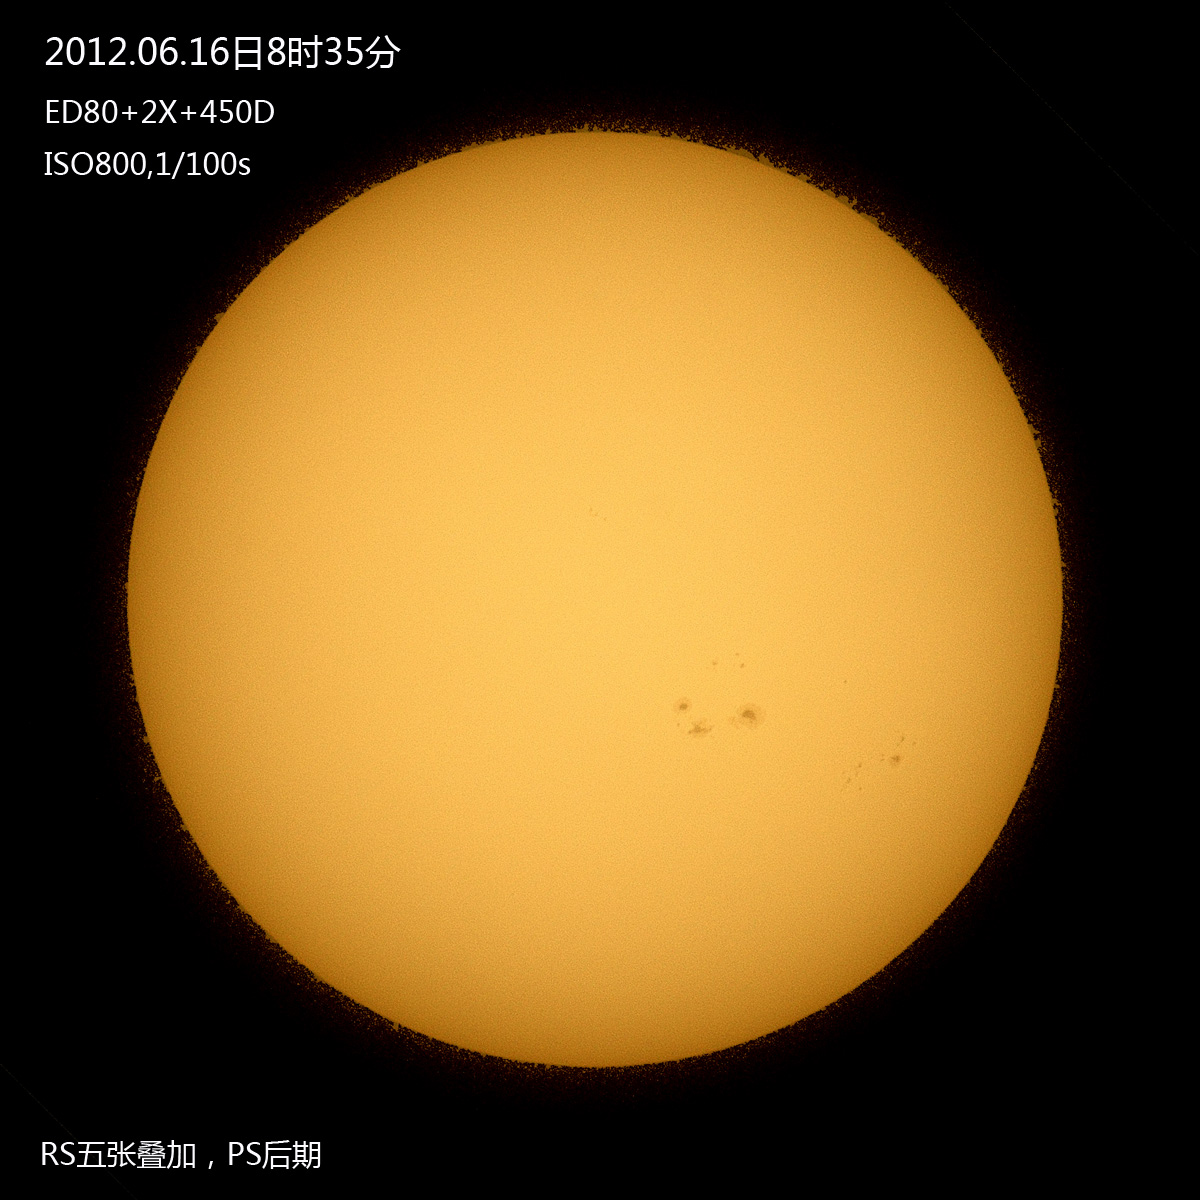 20120616太阳s.jpg